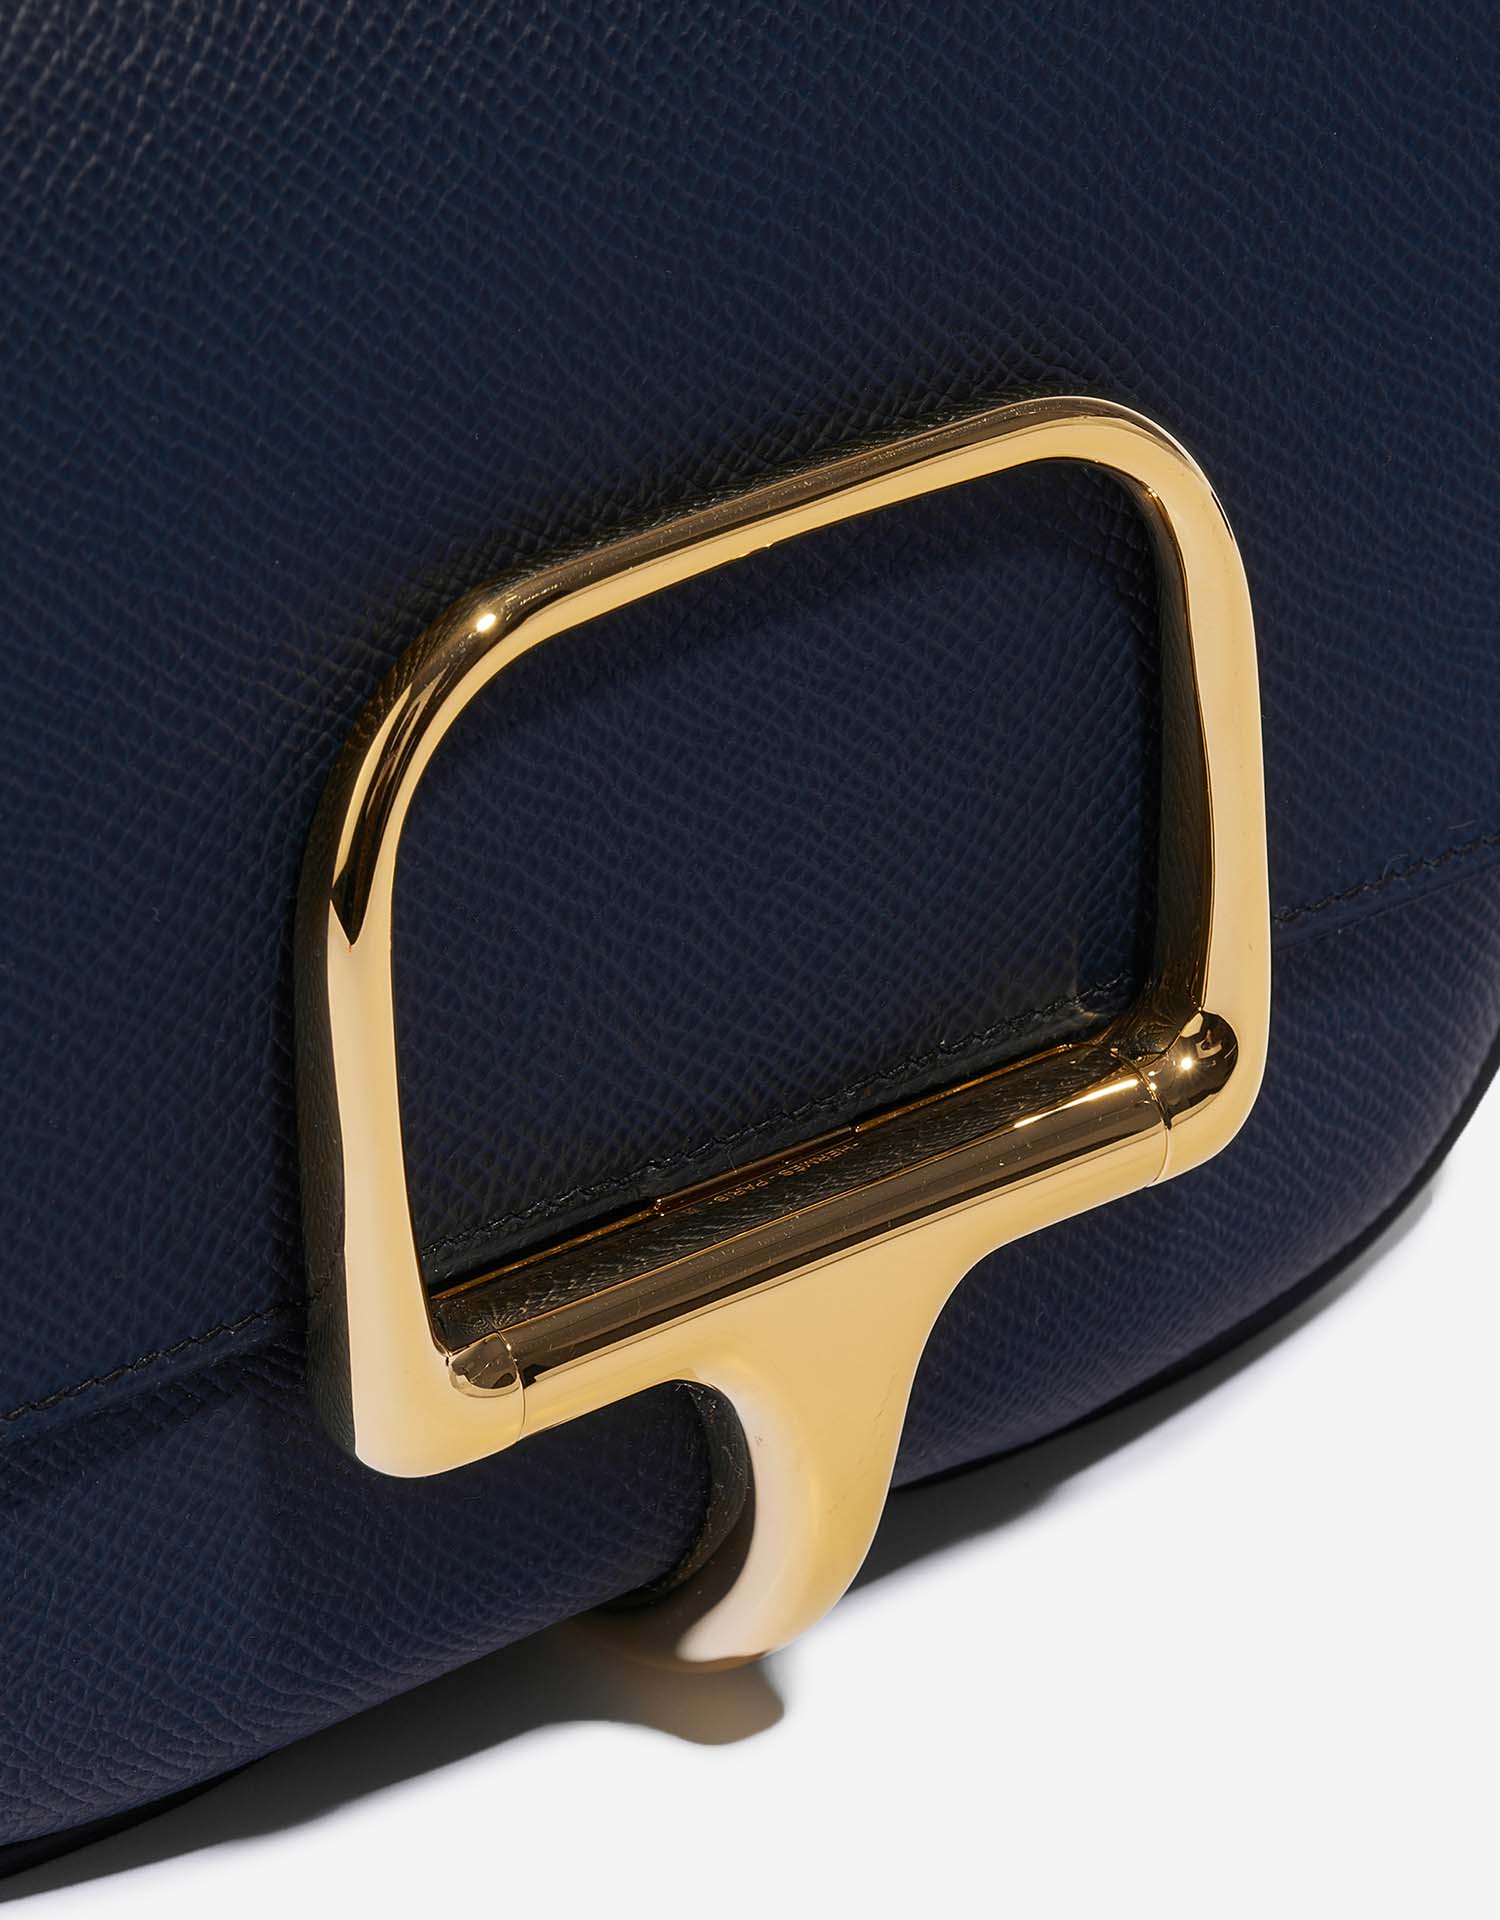 Hermès DellaCavalleria Mini BleuIndigo Verschluss-System | Verkaufen Sie Ihre Designer-Tasche auf Saclab.com